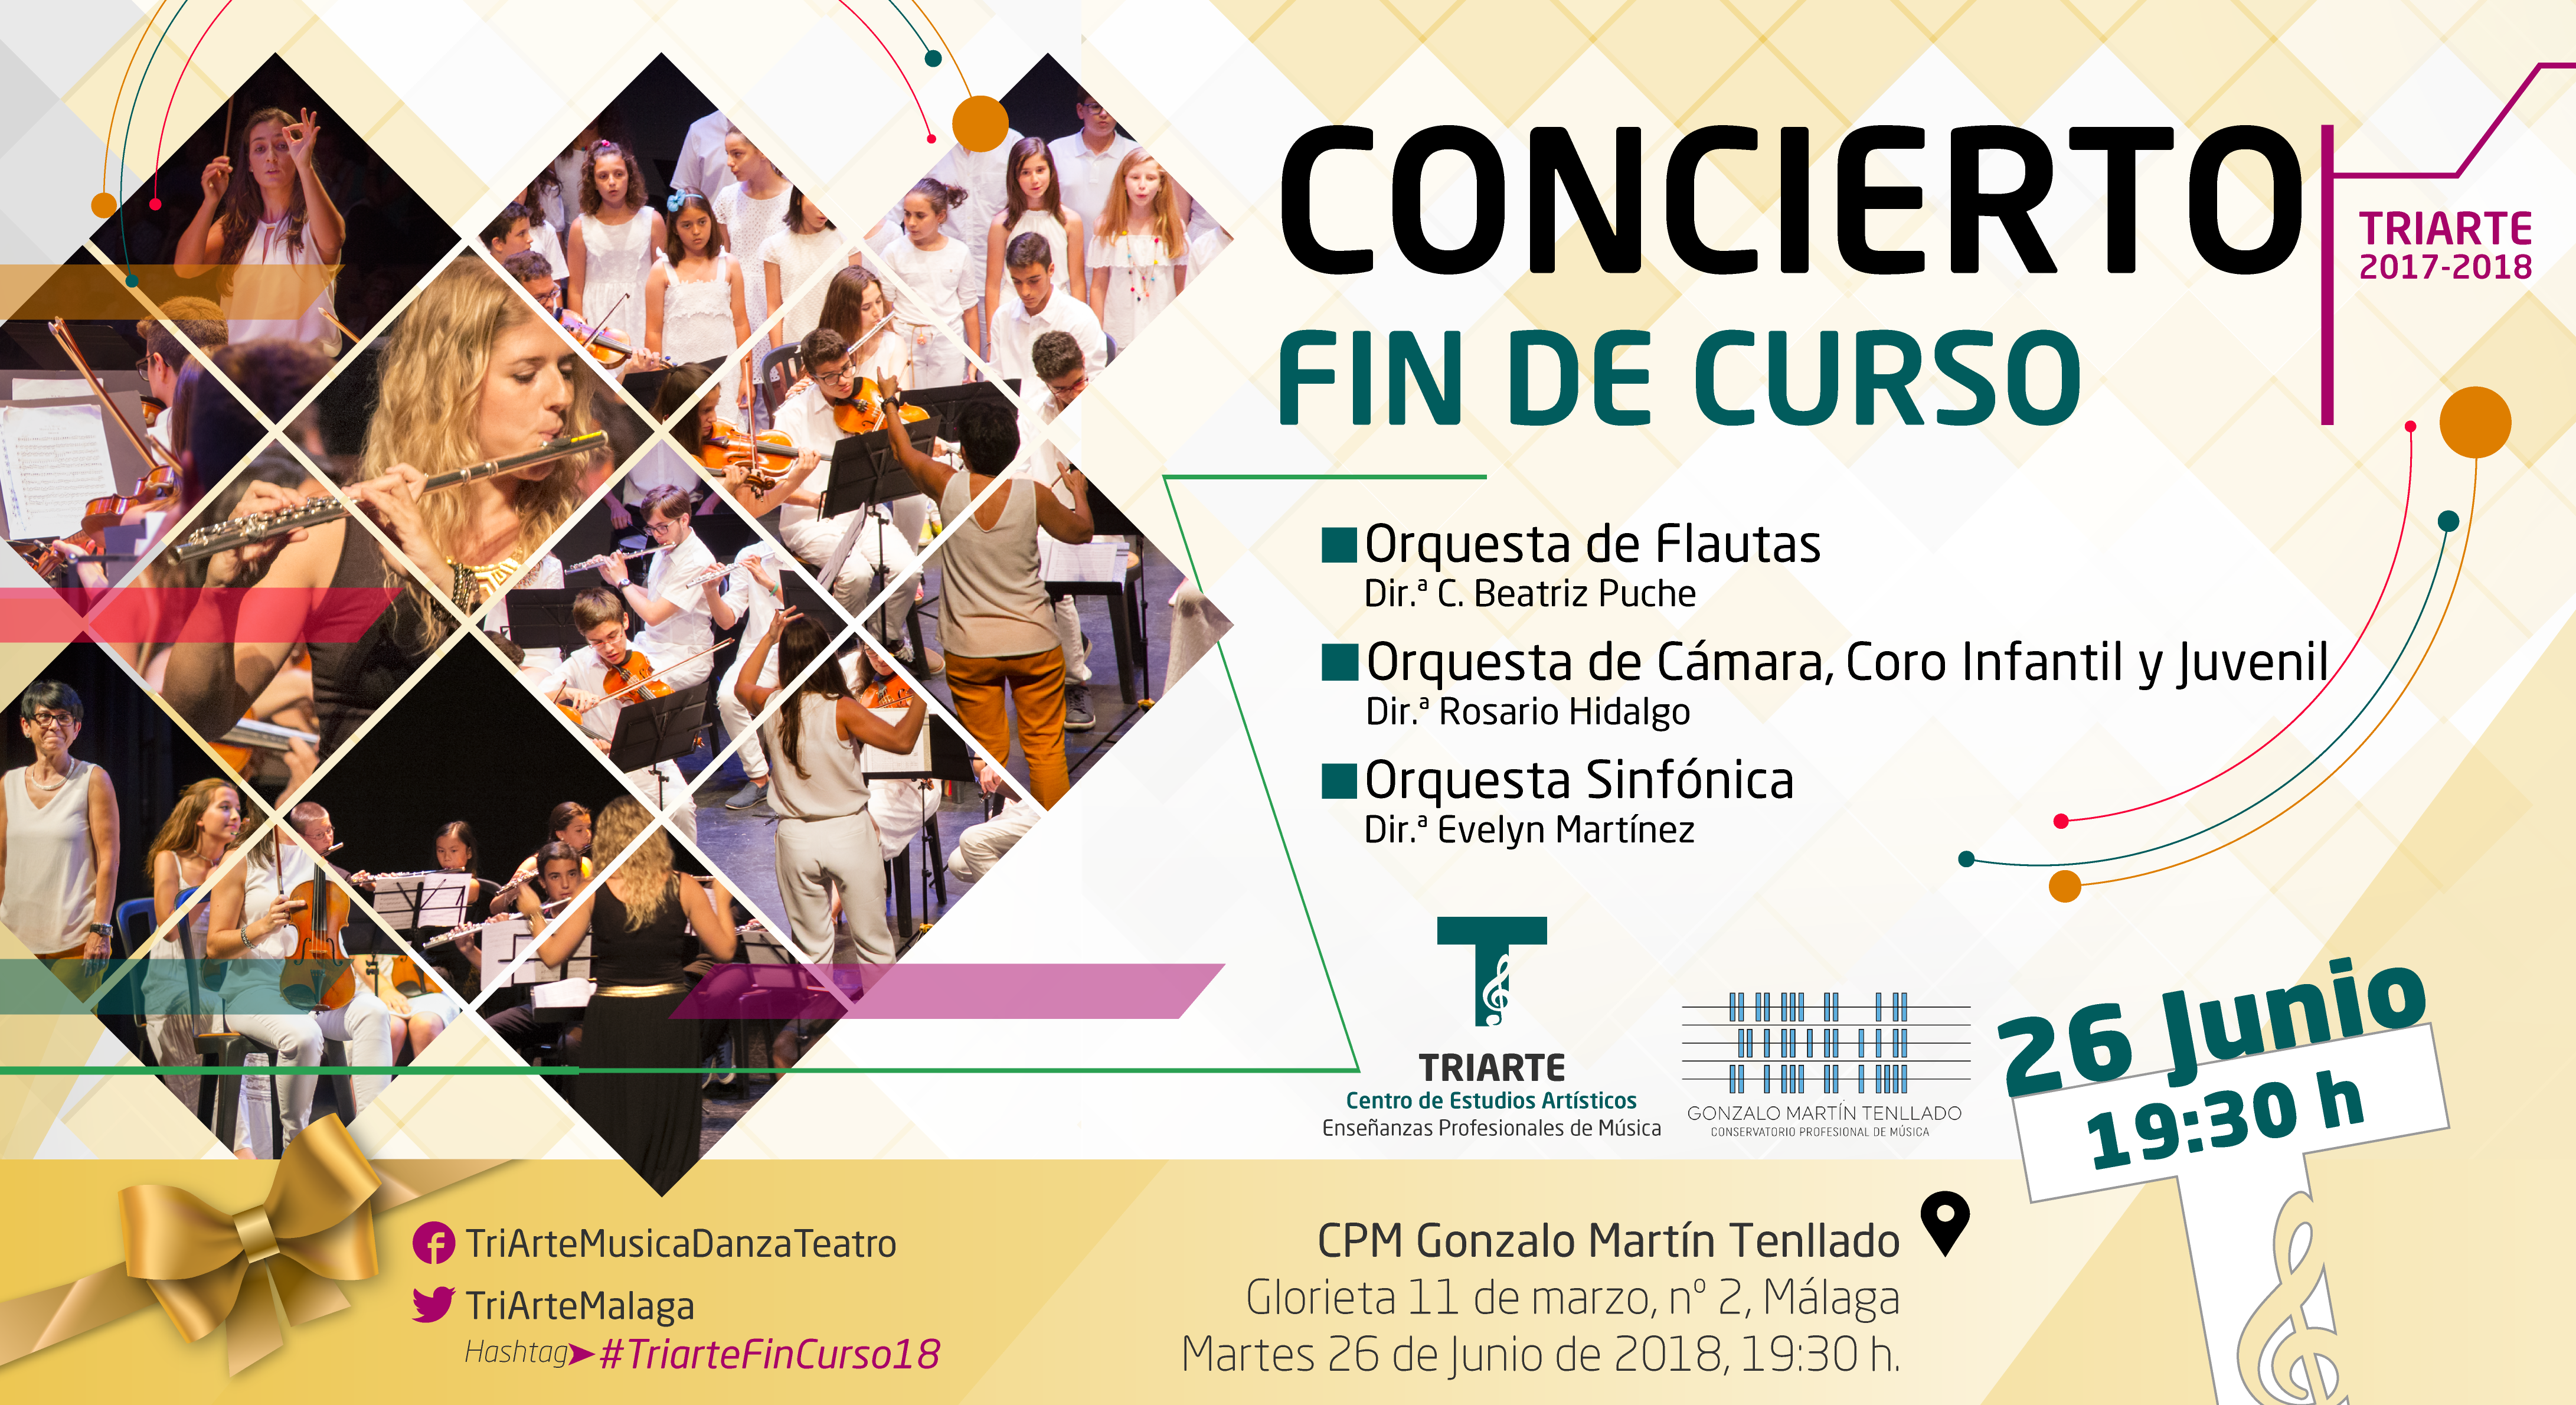 Concierto Fin de Curso 17-18. Triarte. Estudios de Enseñanzas Profesionales de Música en Málaga.